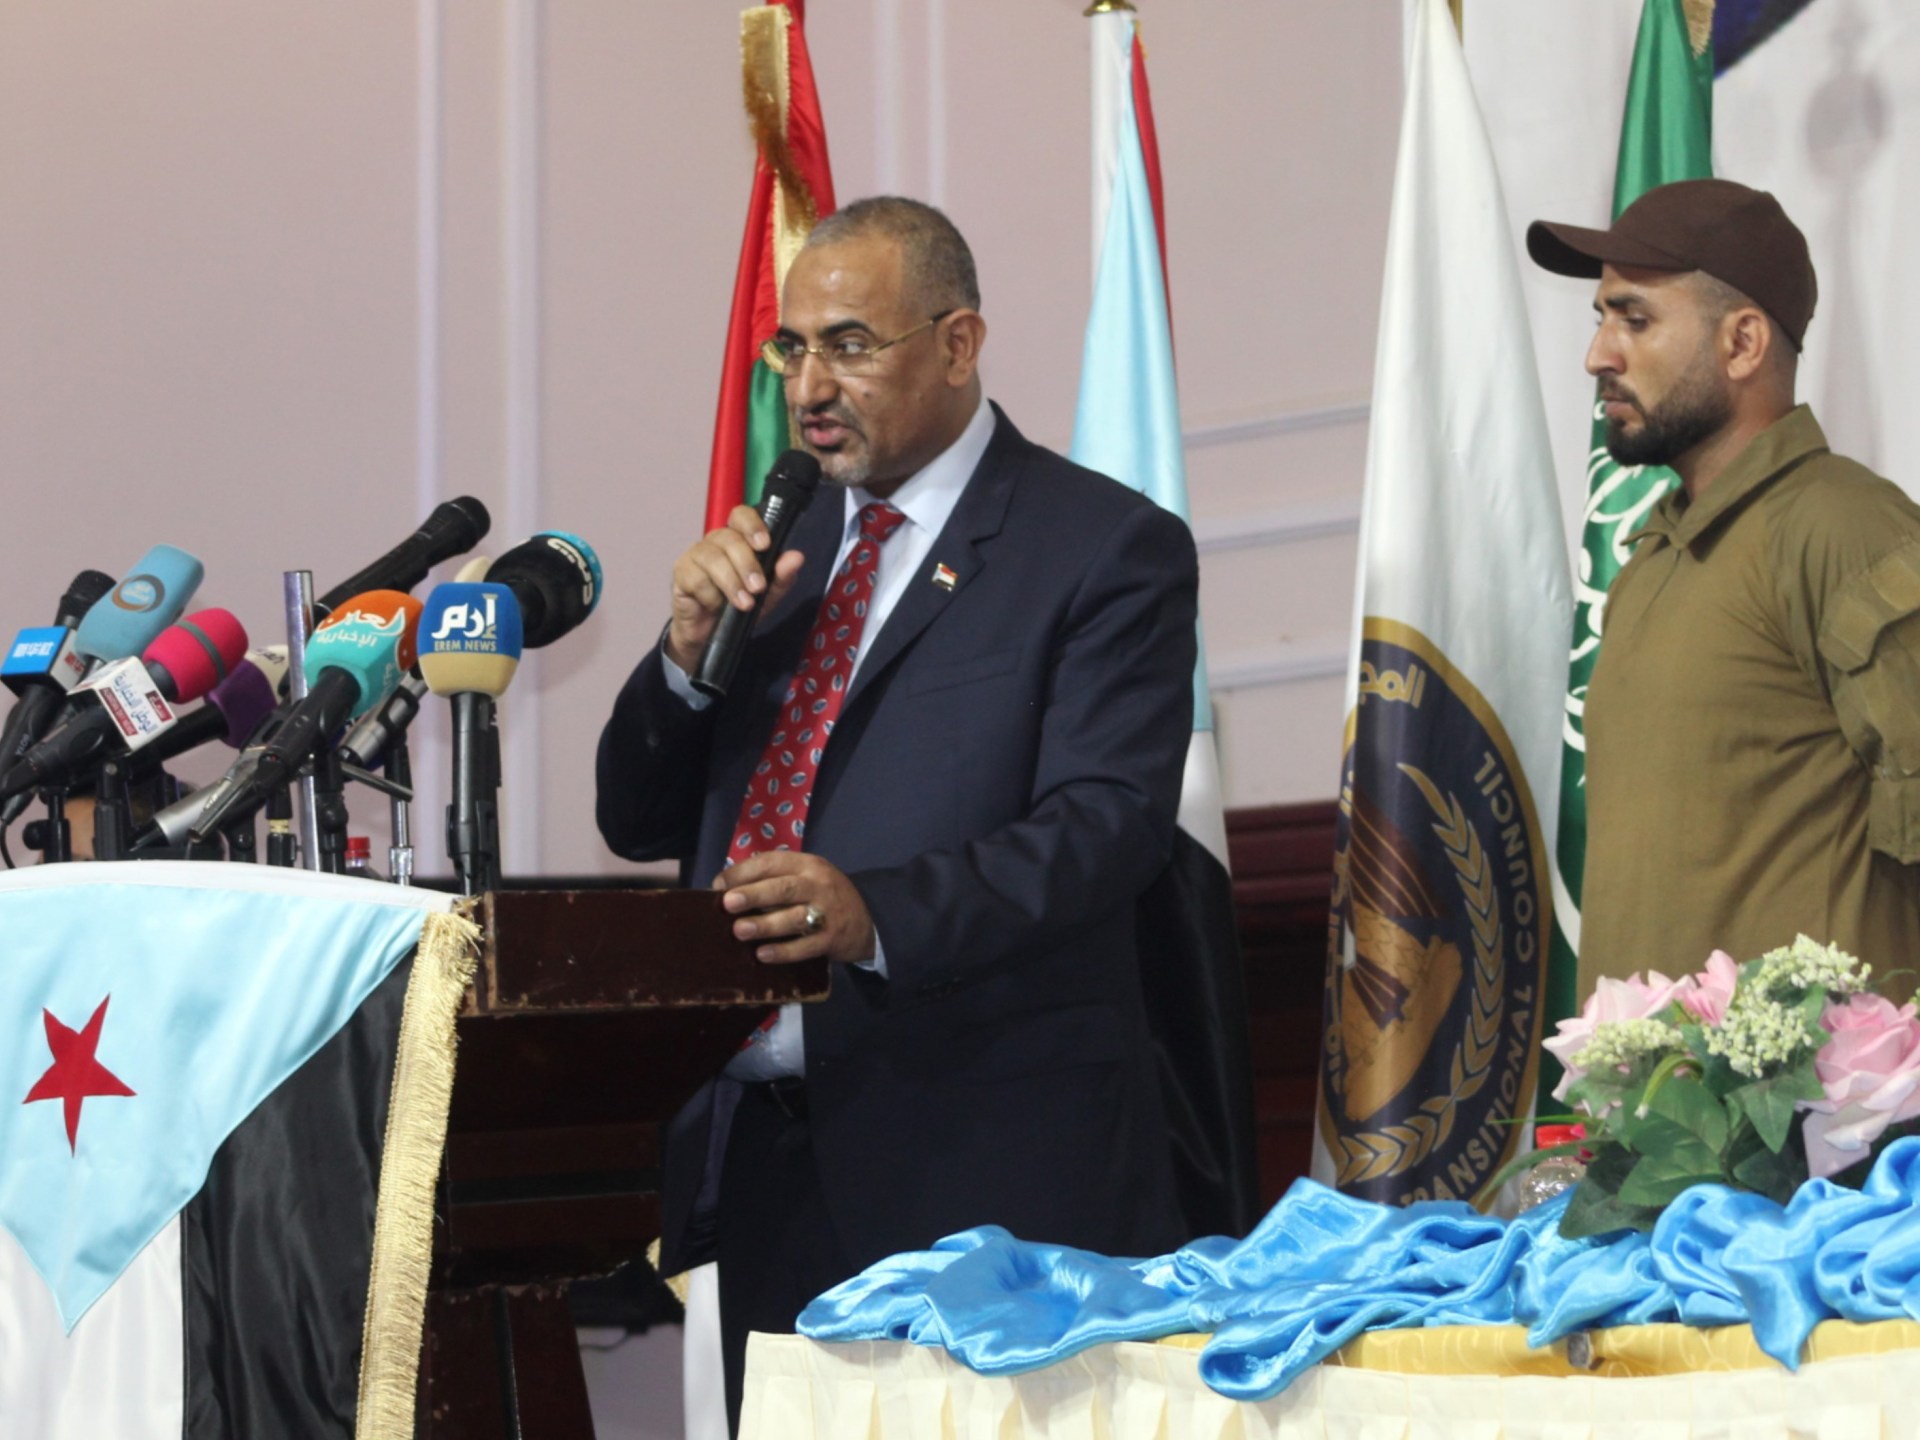 الحوار الجنوبي في اليمن.. المجلس الانتقالي يتوسع وعقدة الانقسام دائمة